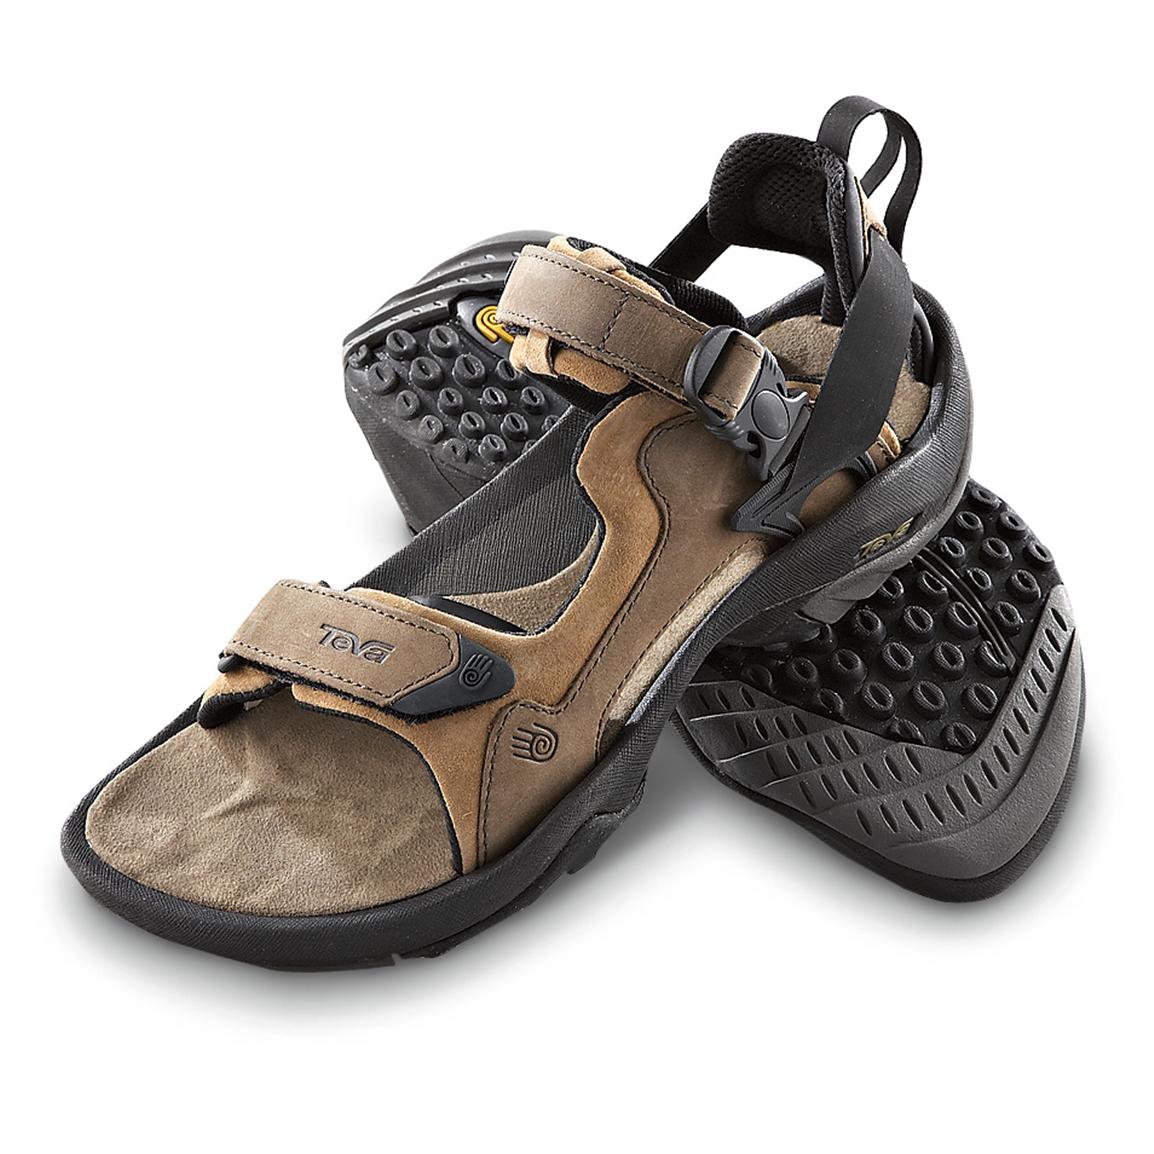  Men s  Teva  Terra Luxe Adventure Sandals  Brown 155604 